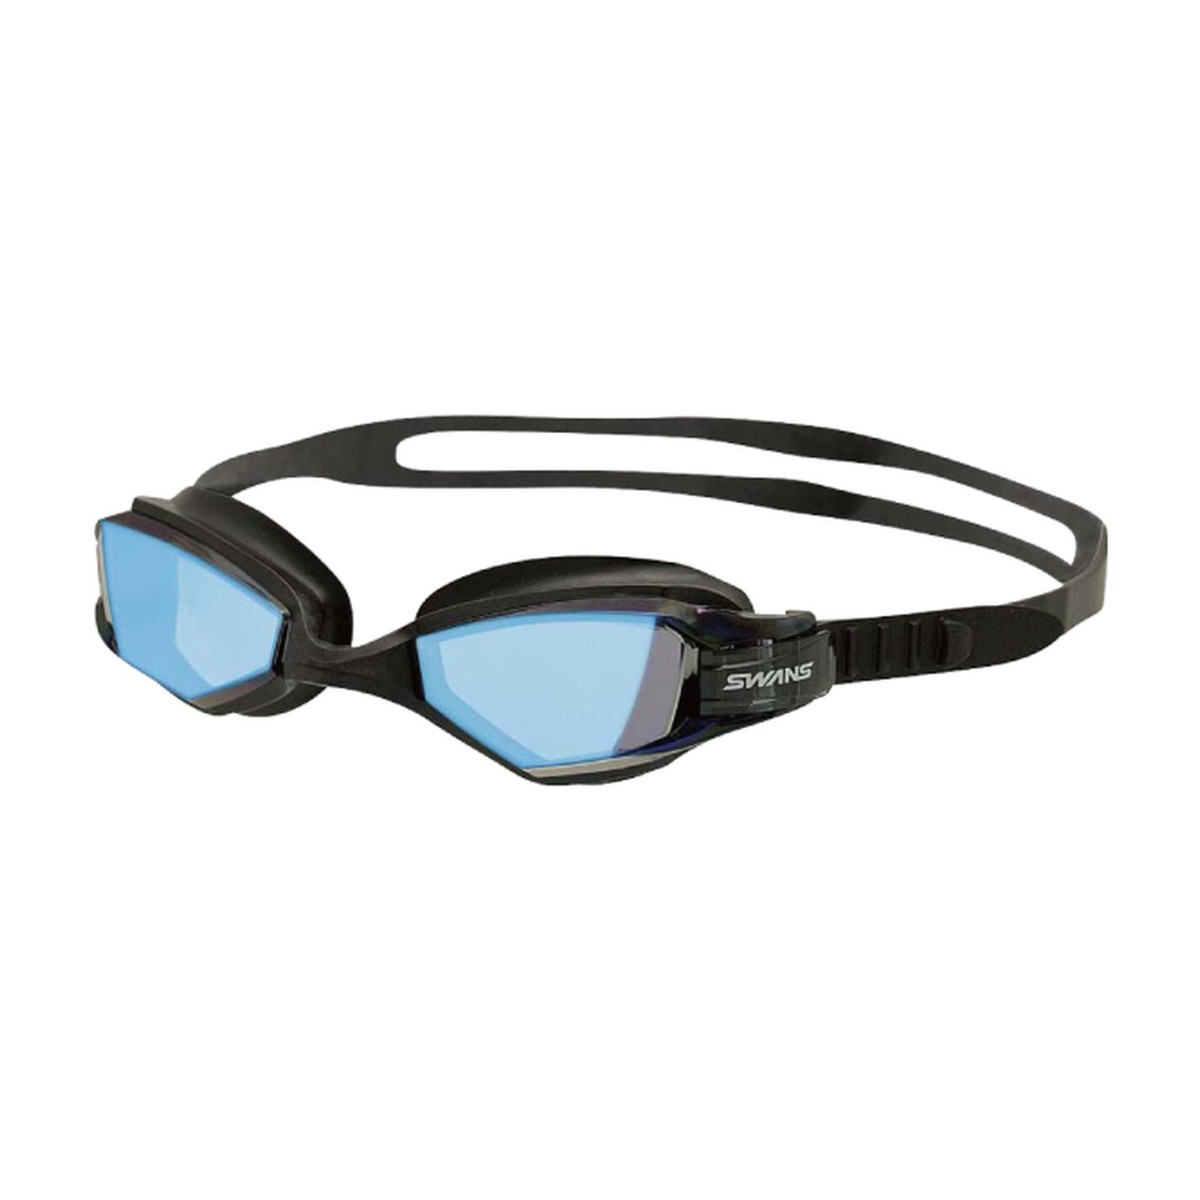 Gafas de natación SWANS OWS - 1MS SMBL Negras Azules, Color Negro